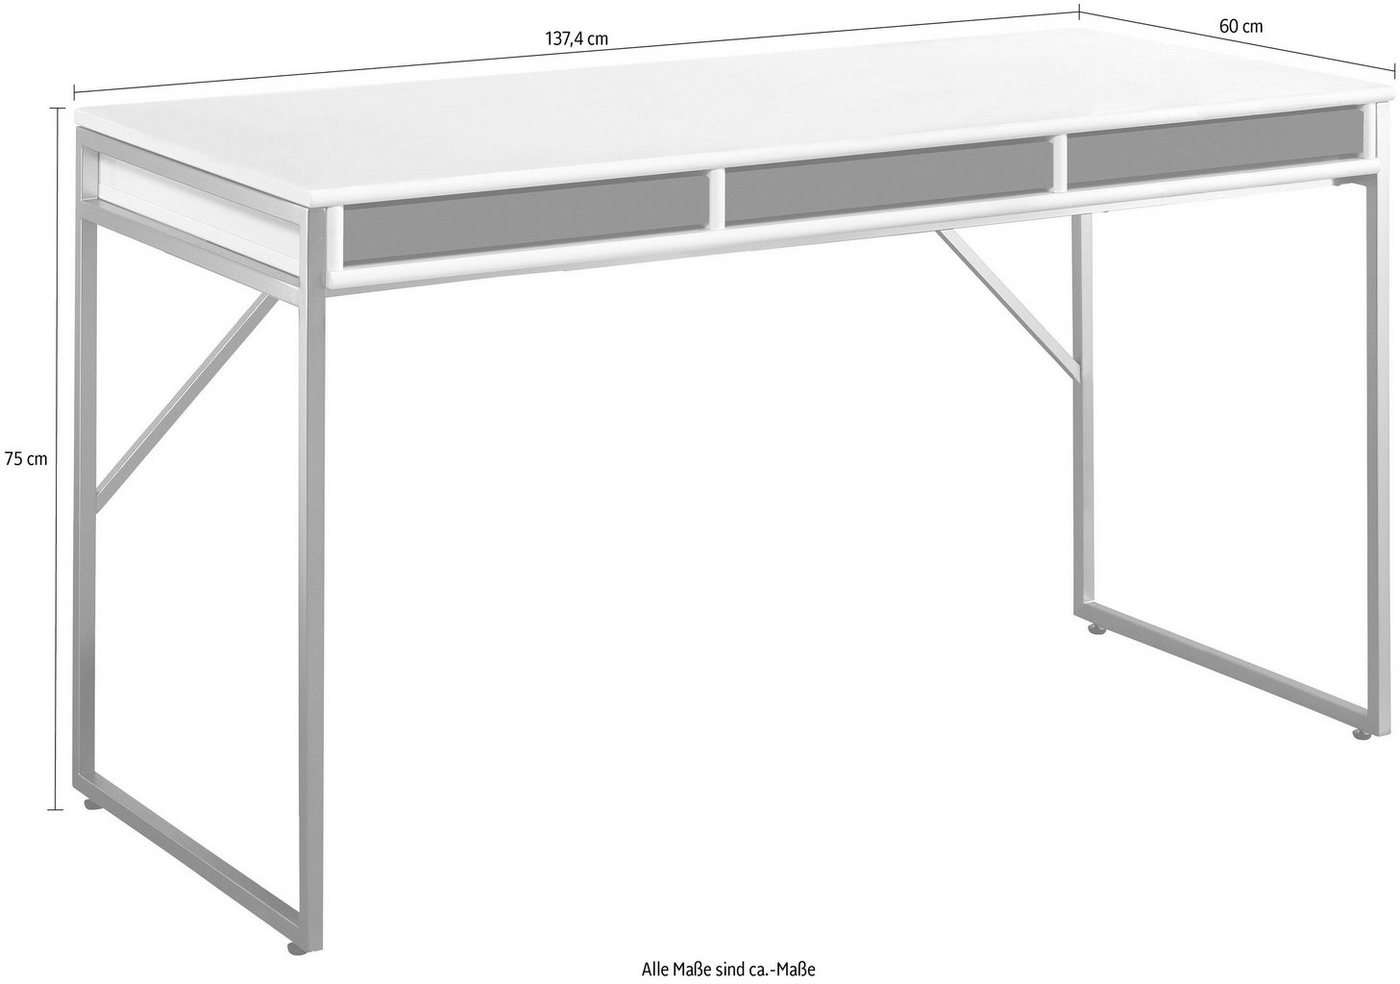 Hammel Furniture Schreibtisch »Mistral«, mit Metallgestell und drei Schubladen, Breite: 137,4 cm, Dänische Handwerkskunst-kaufen